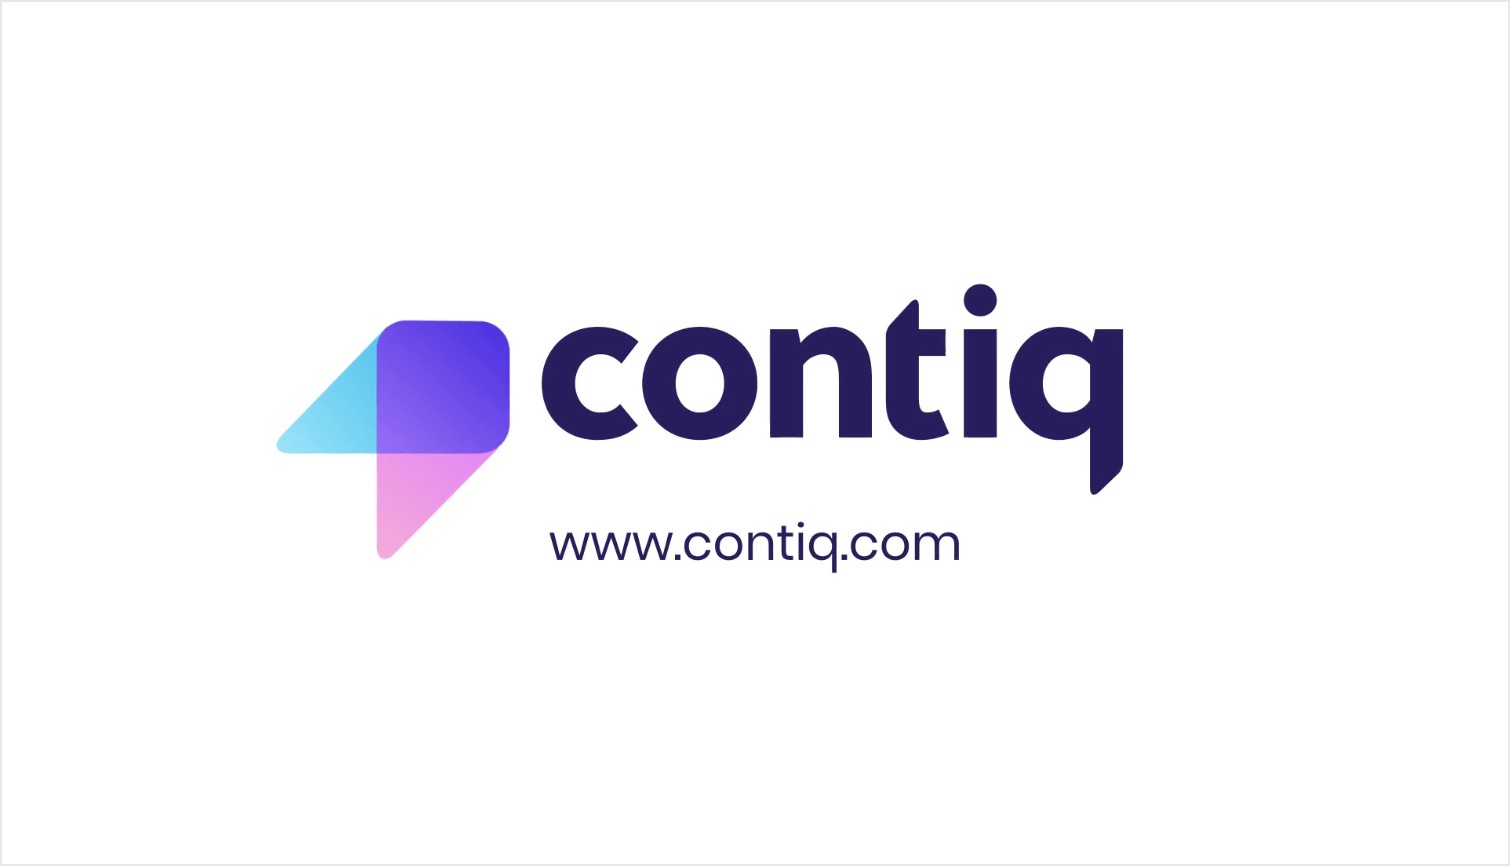 Contiq (July 2020)